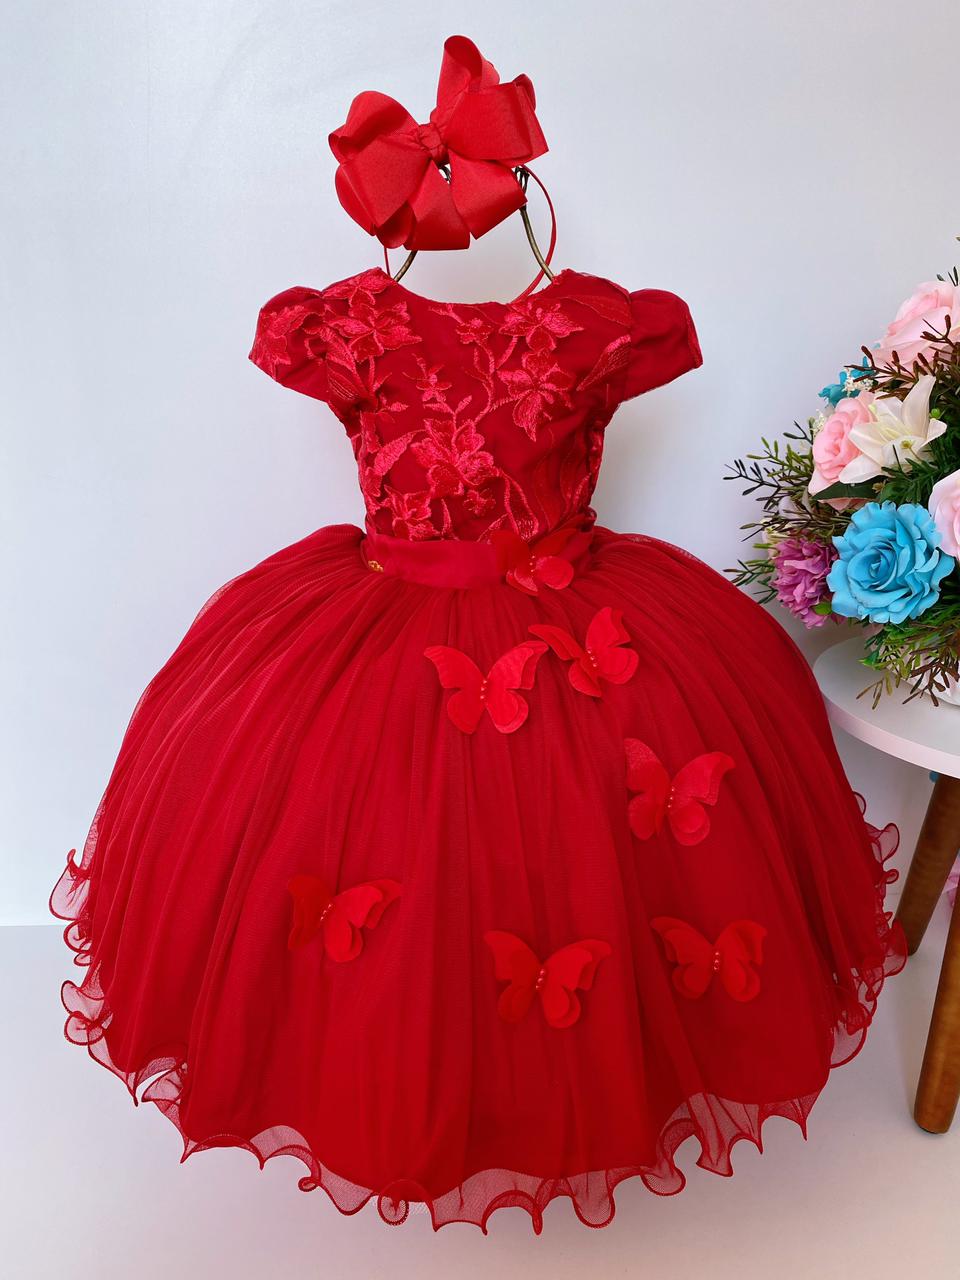 Vestido Infantil Vermelho Luxo Renda Aplique de Borboletas